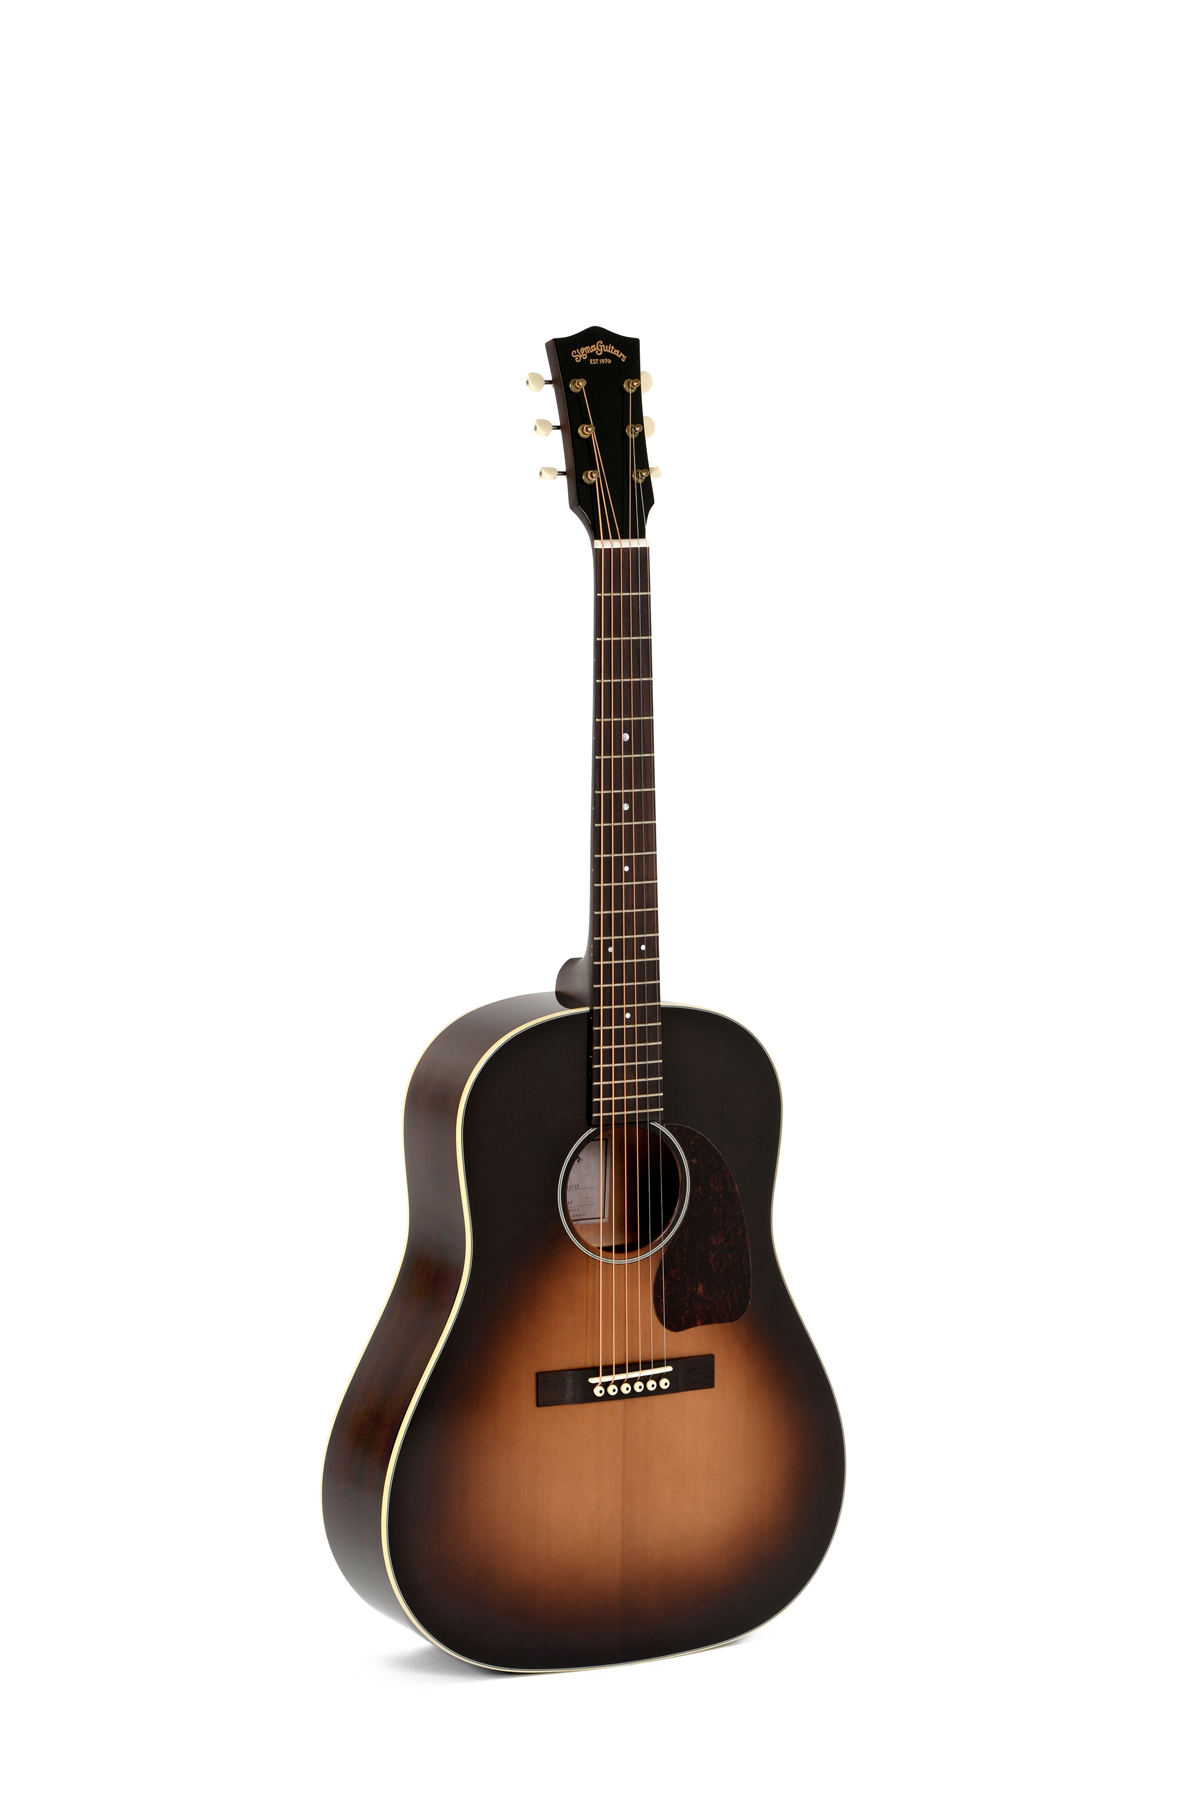 Электроакустические гитары Sigma JM-SG45 guitar fret выравнивание crowning file tool для luthier восстановление гитары обслуживание сменной шлифовальной бумаги